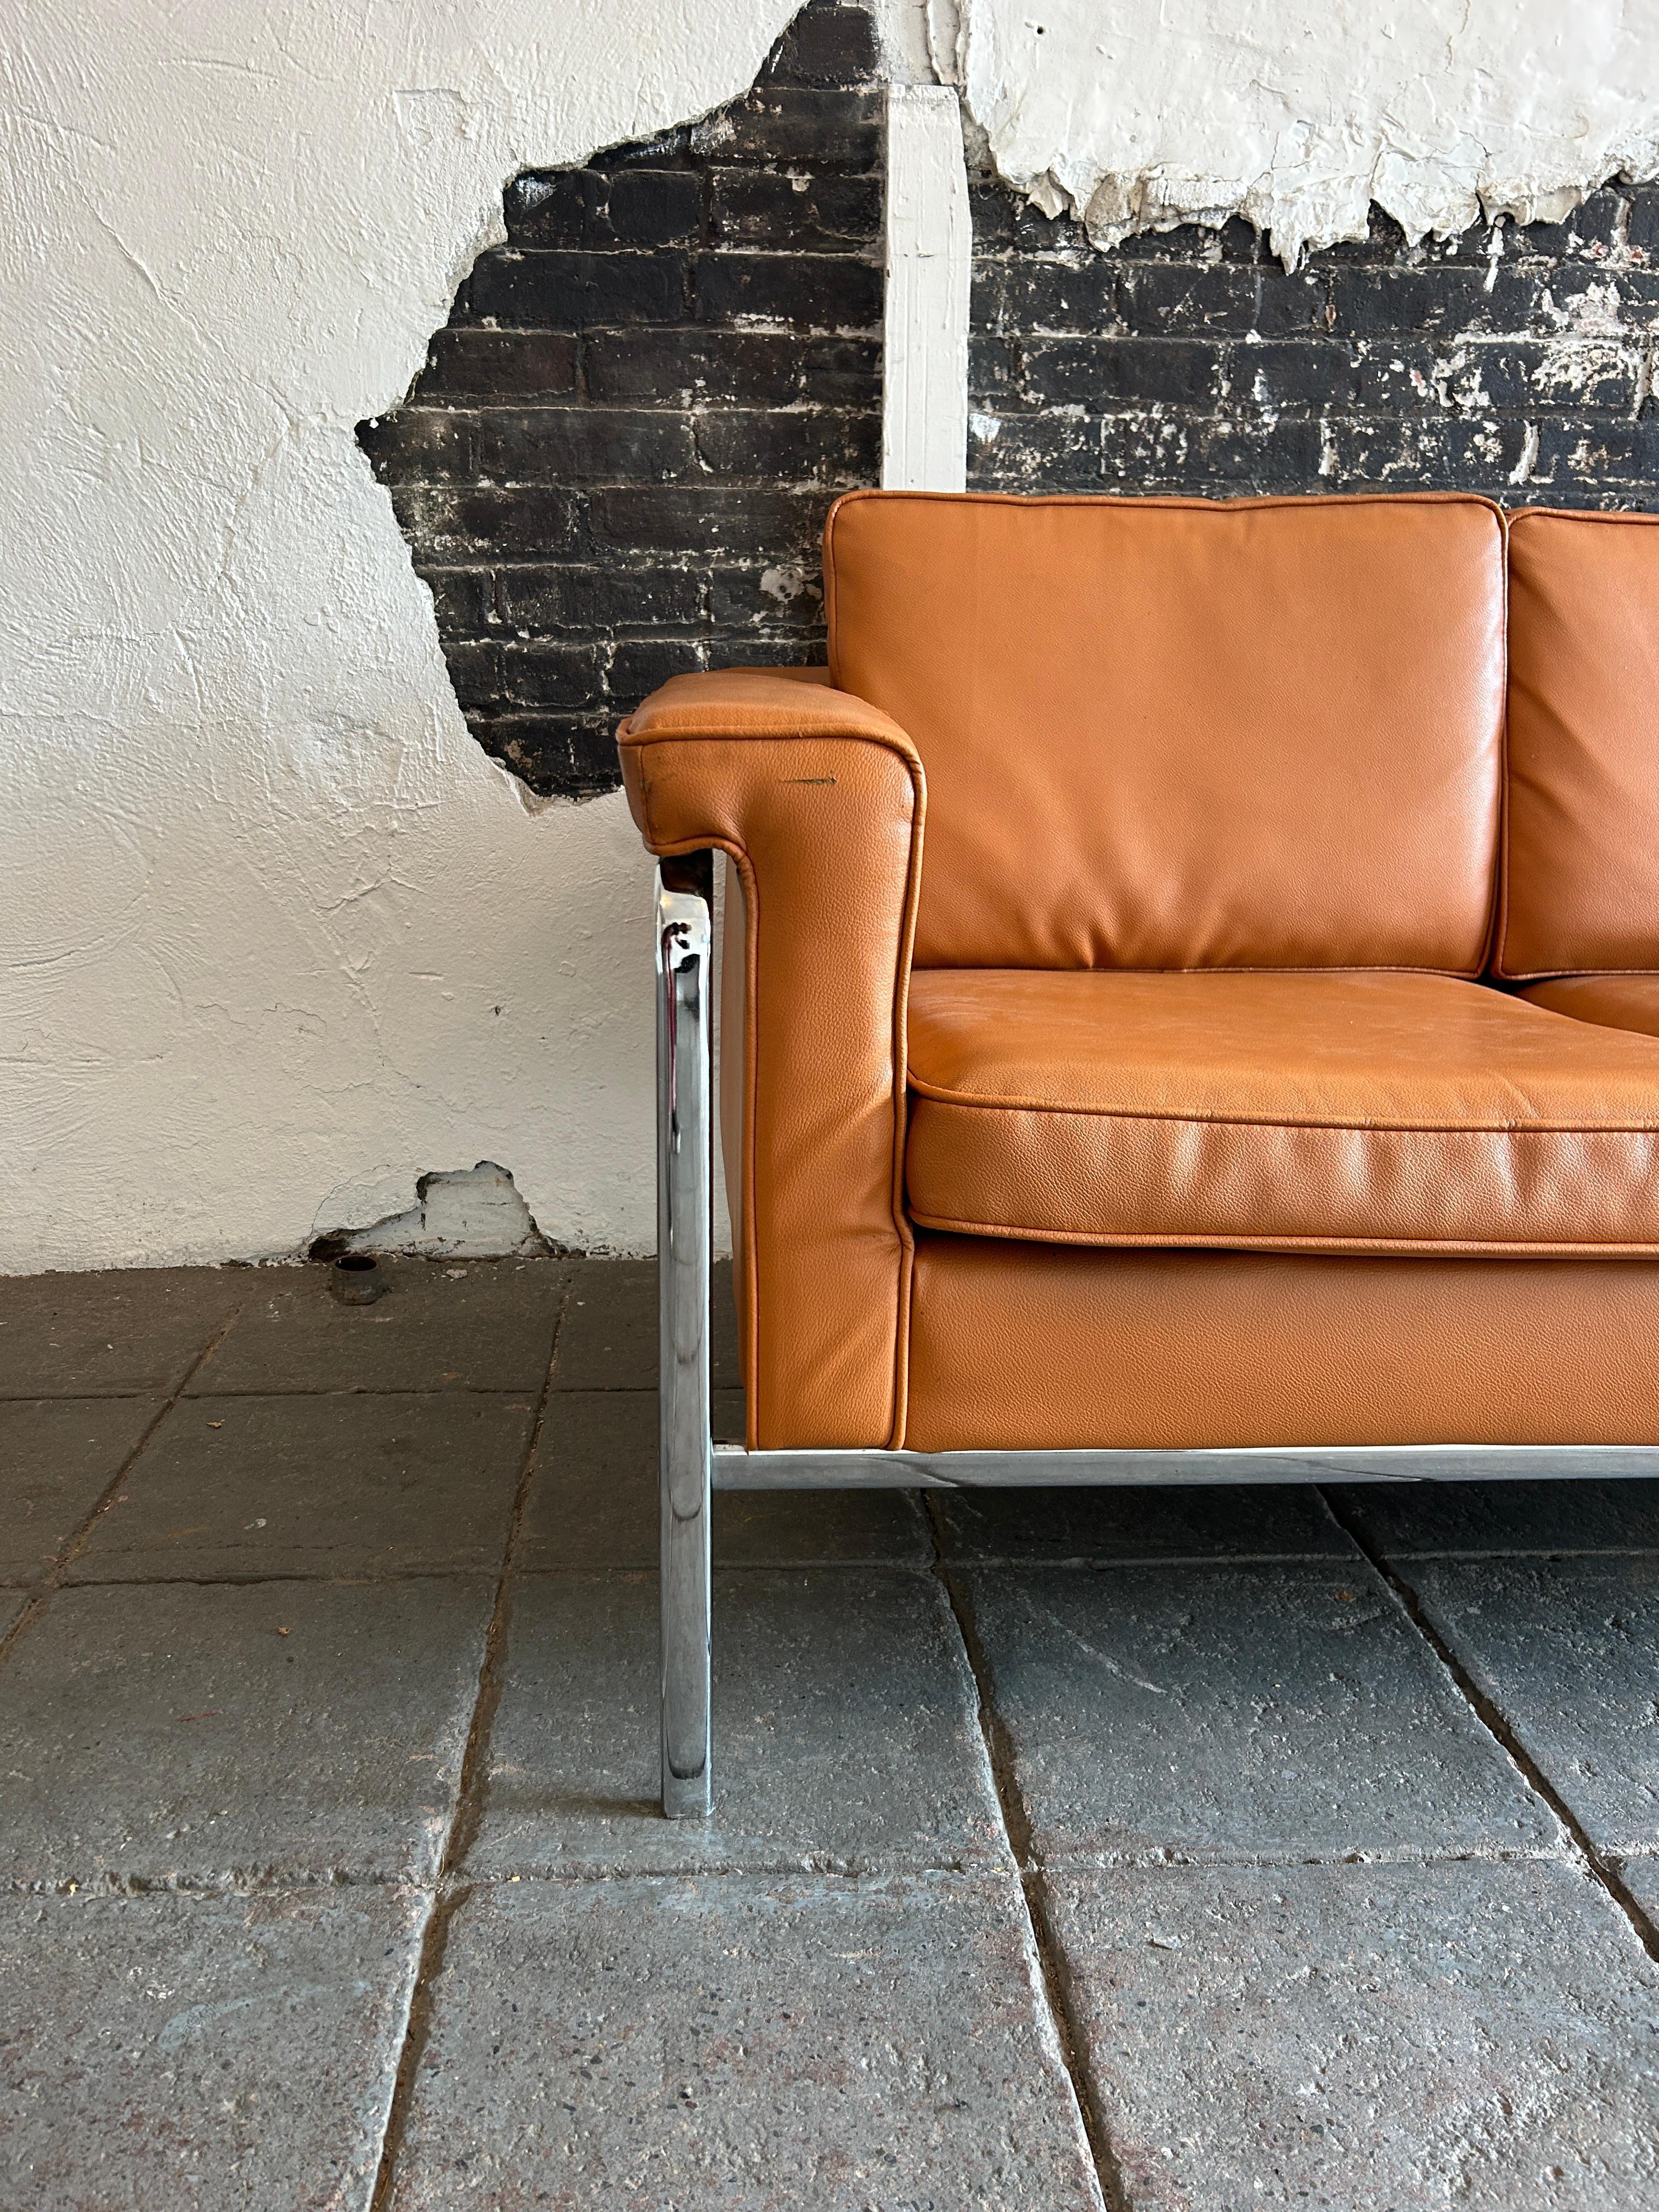 modern tan leather sofa